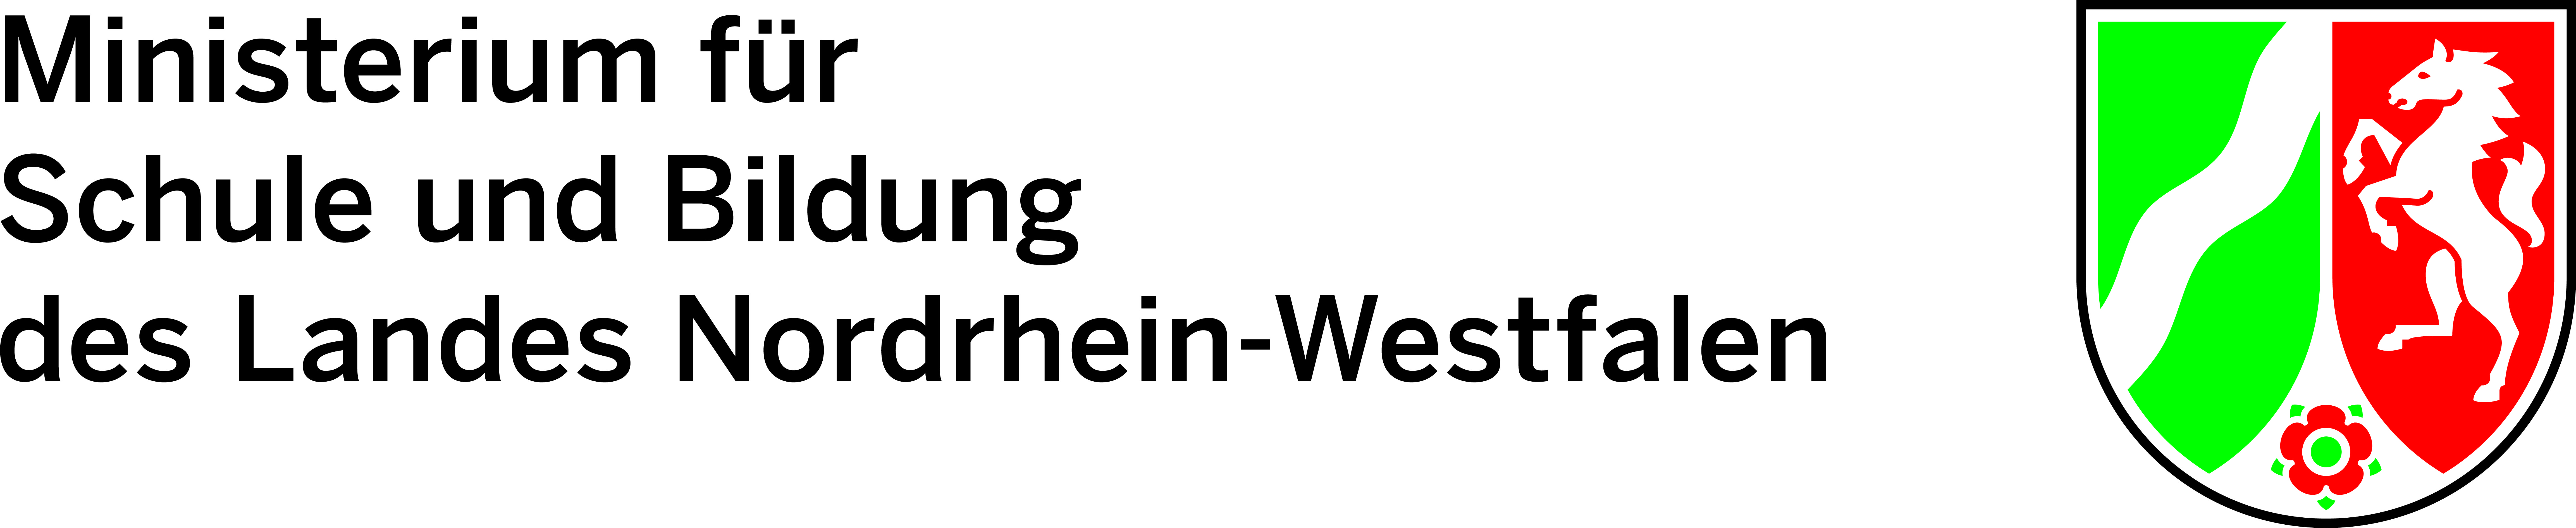 Logo des Ministeriums für Schule und Bildung NRW